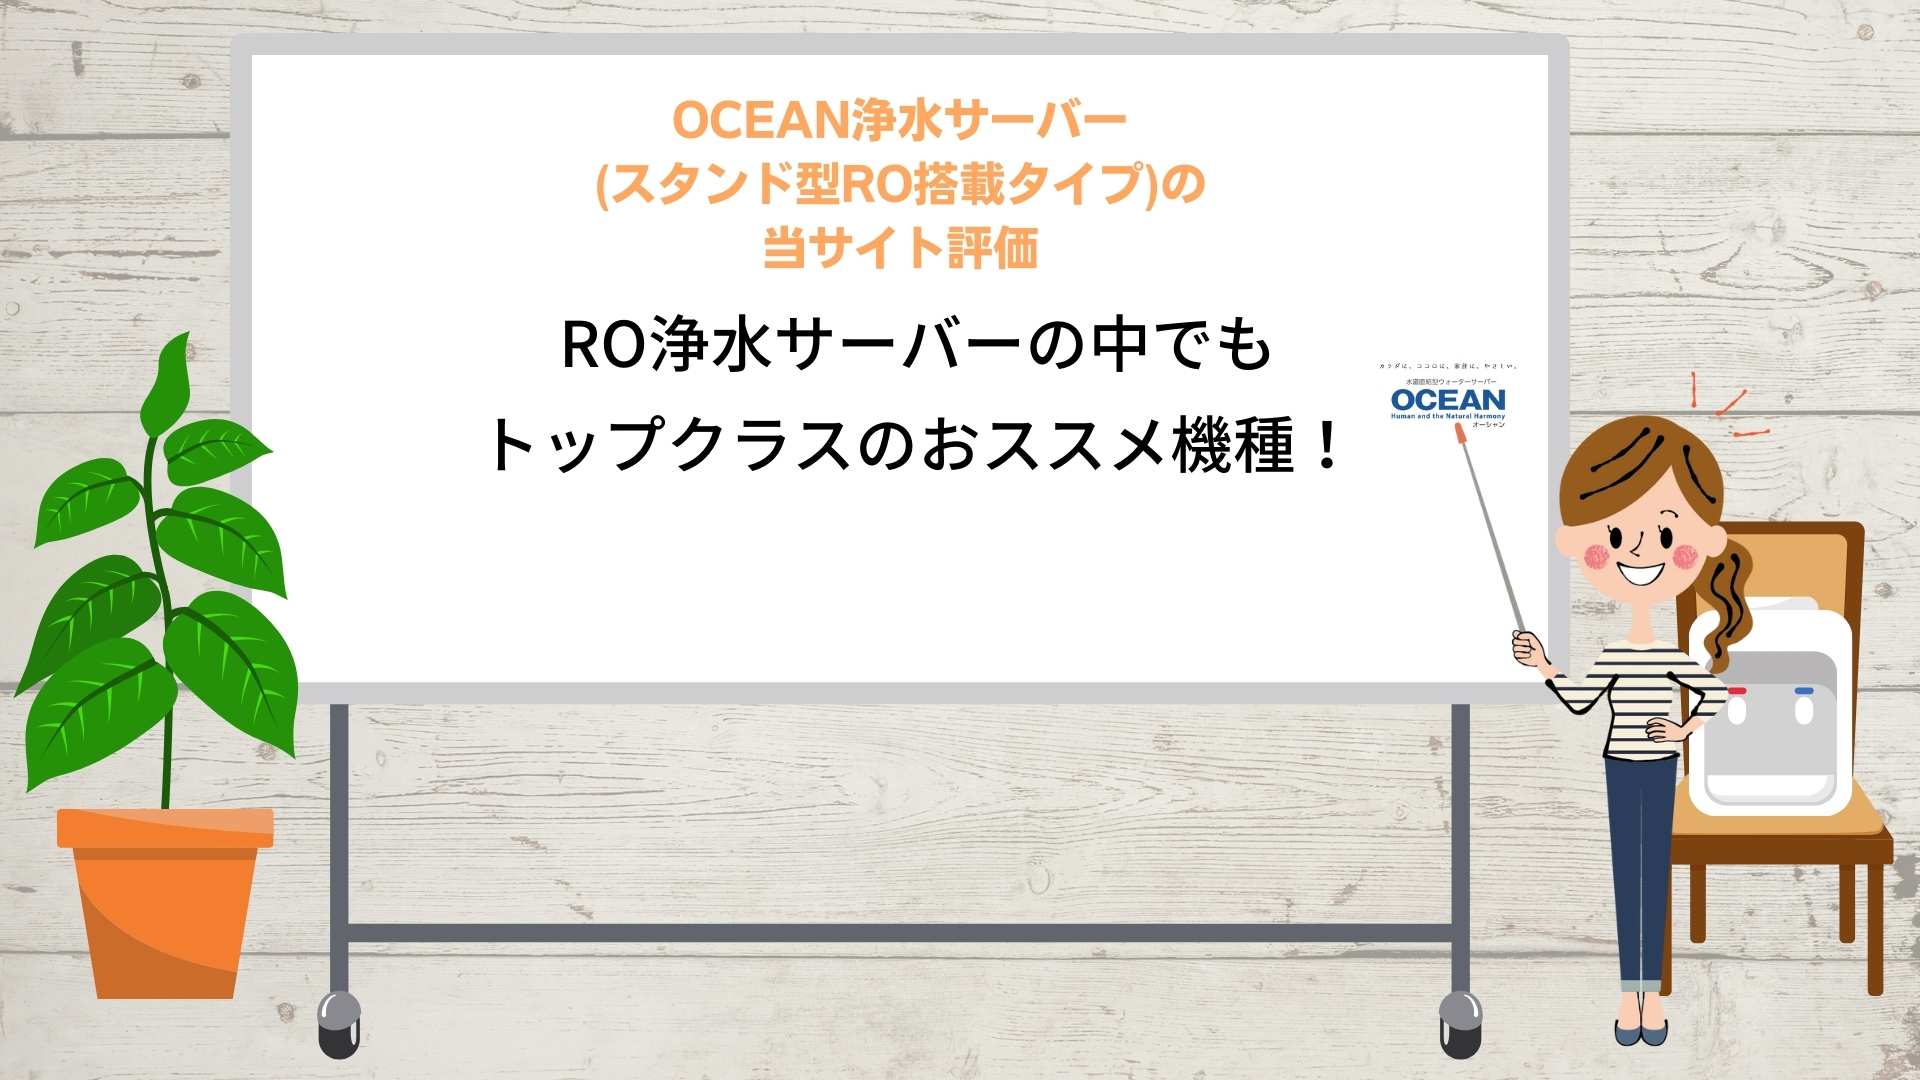 OCEAN浄水サーバー(卓上型ROタイプ)の当サイト評価